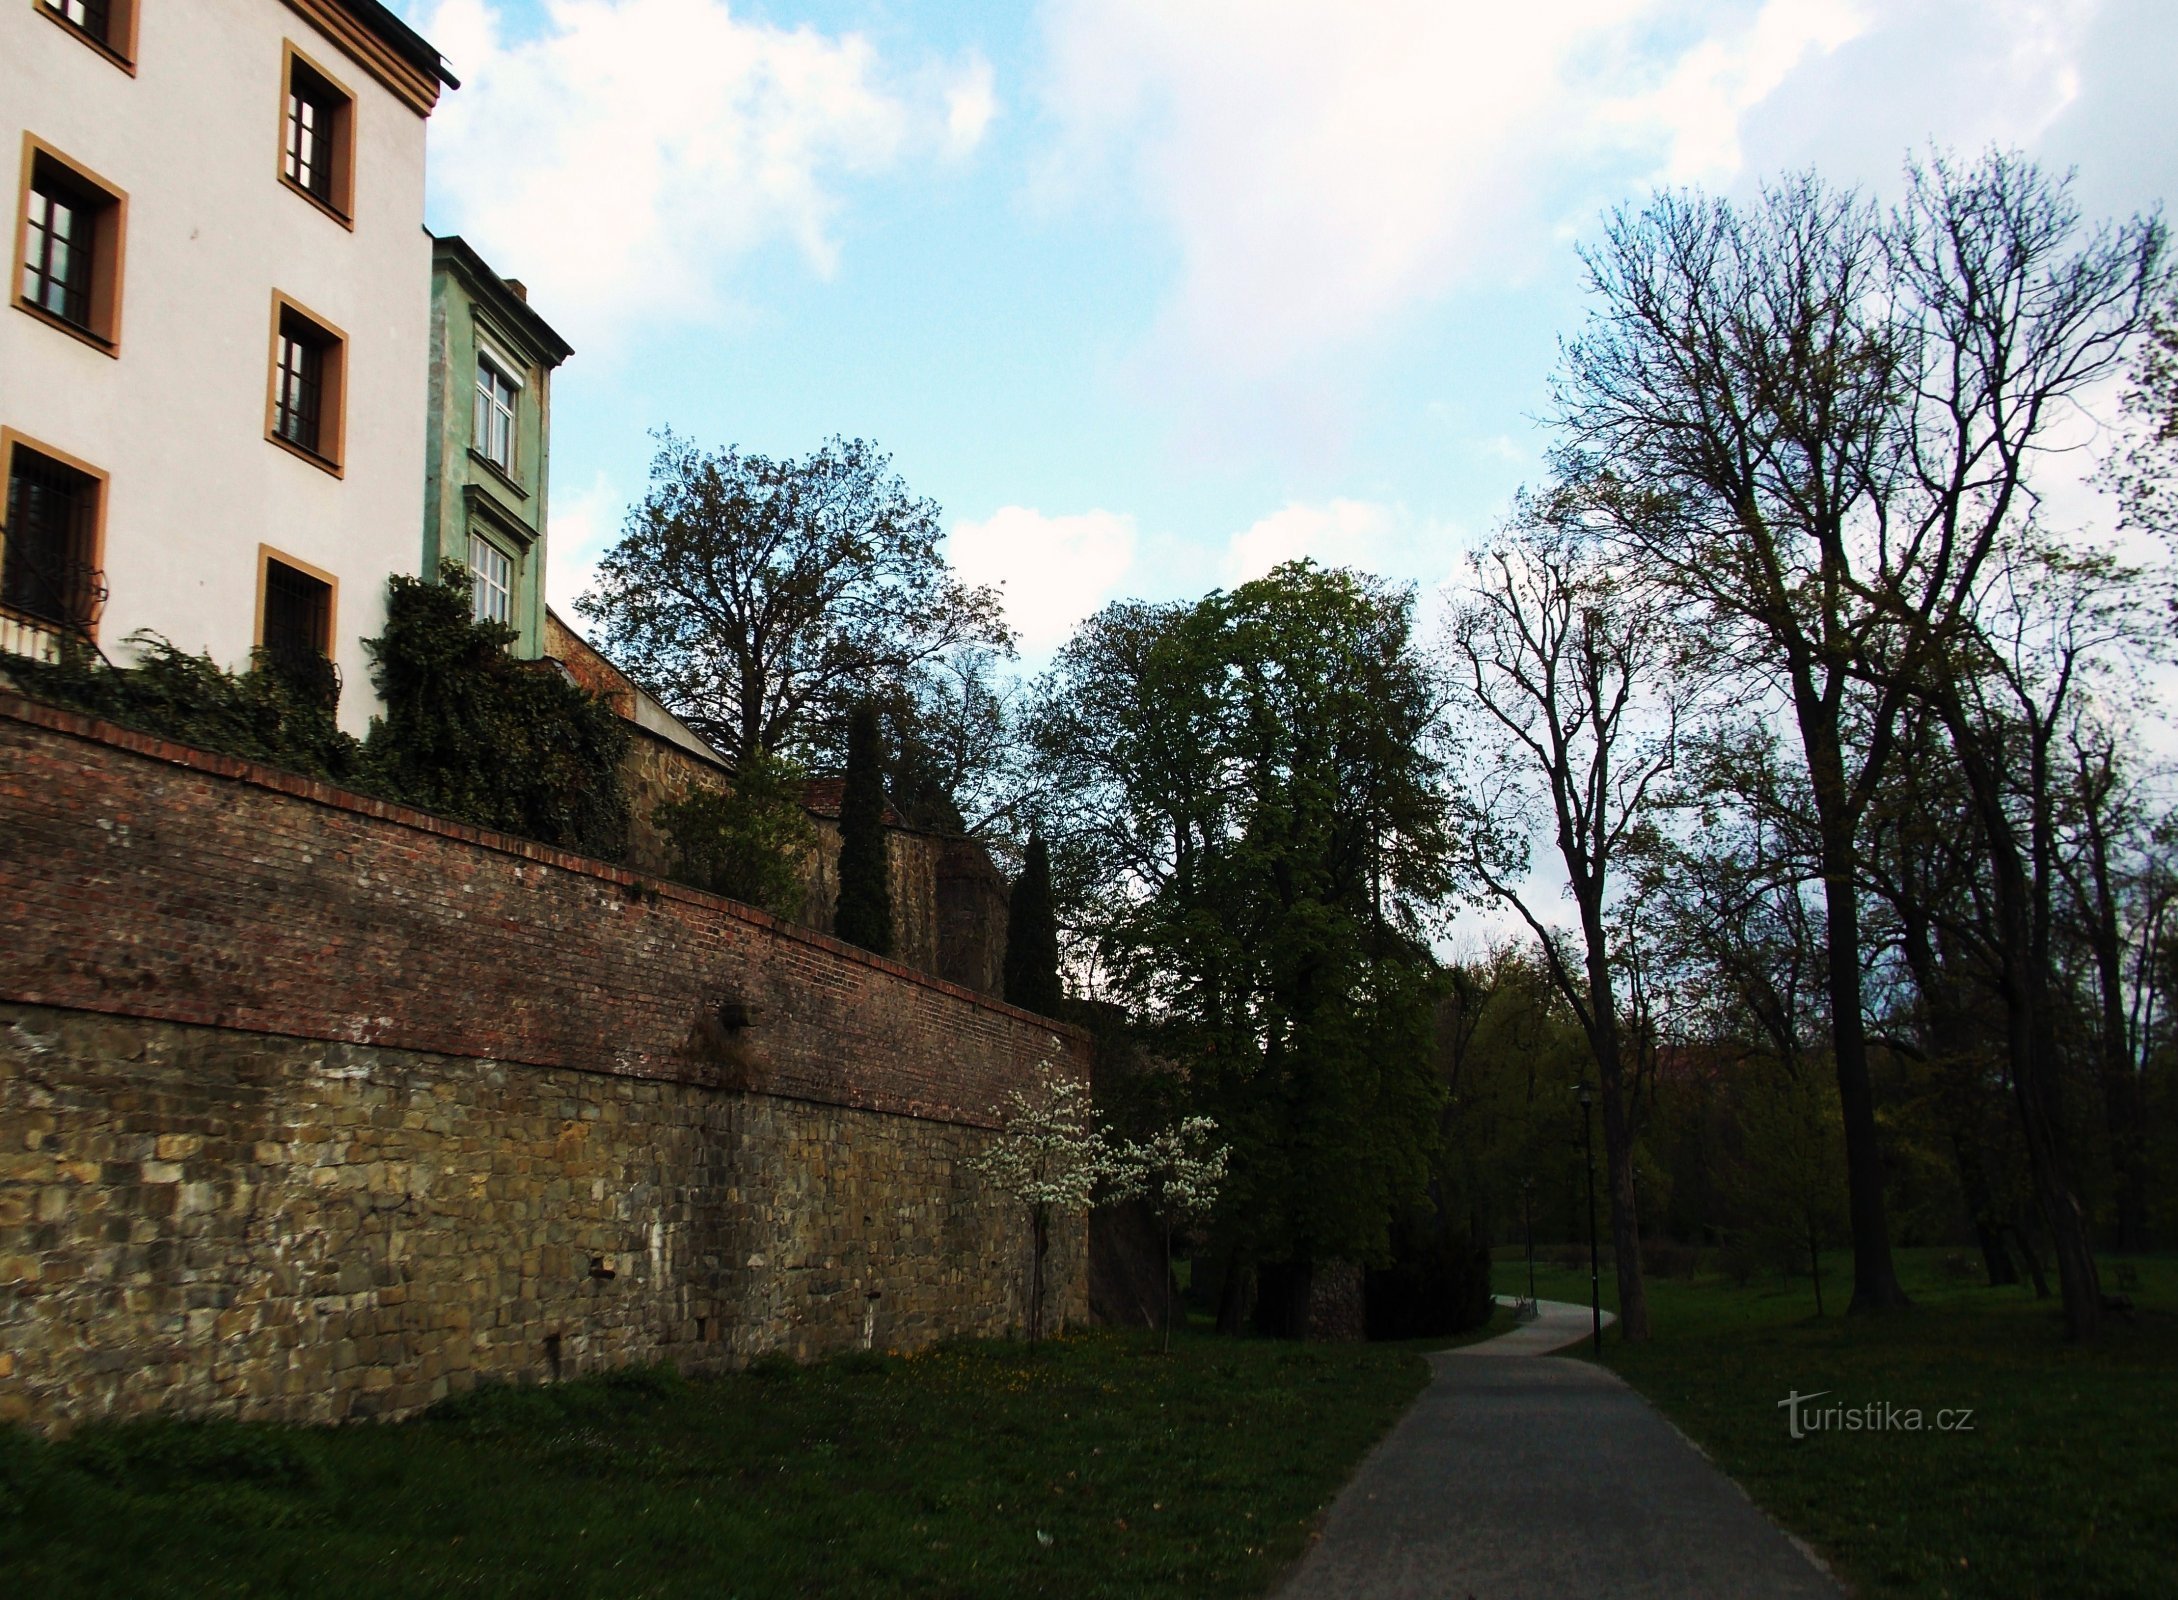 Olomouc, o plimbare prin parcul orașului - Bezručovy sady